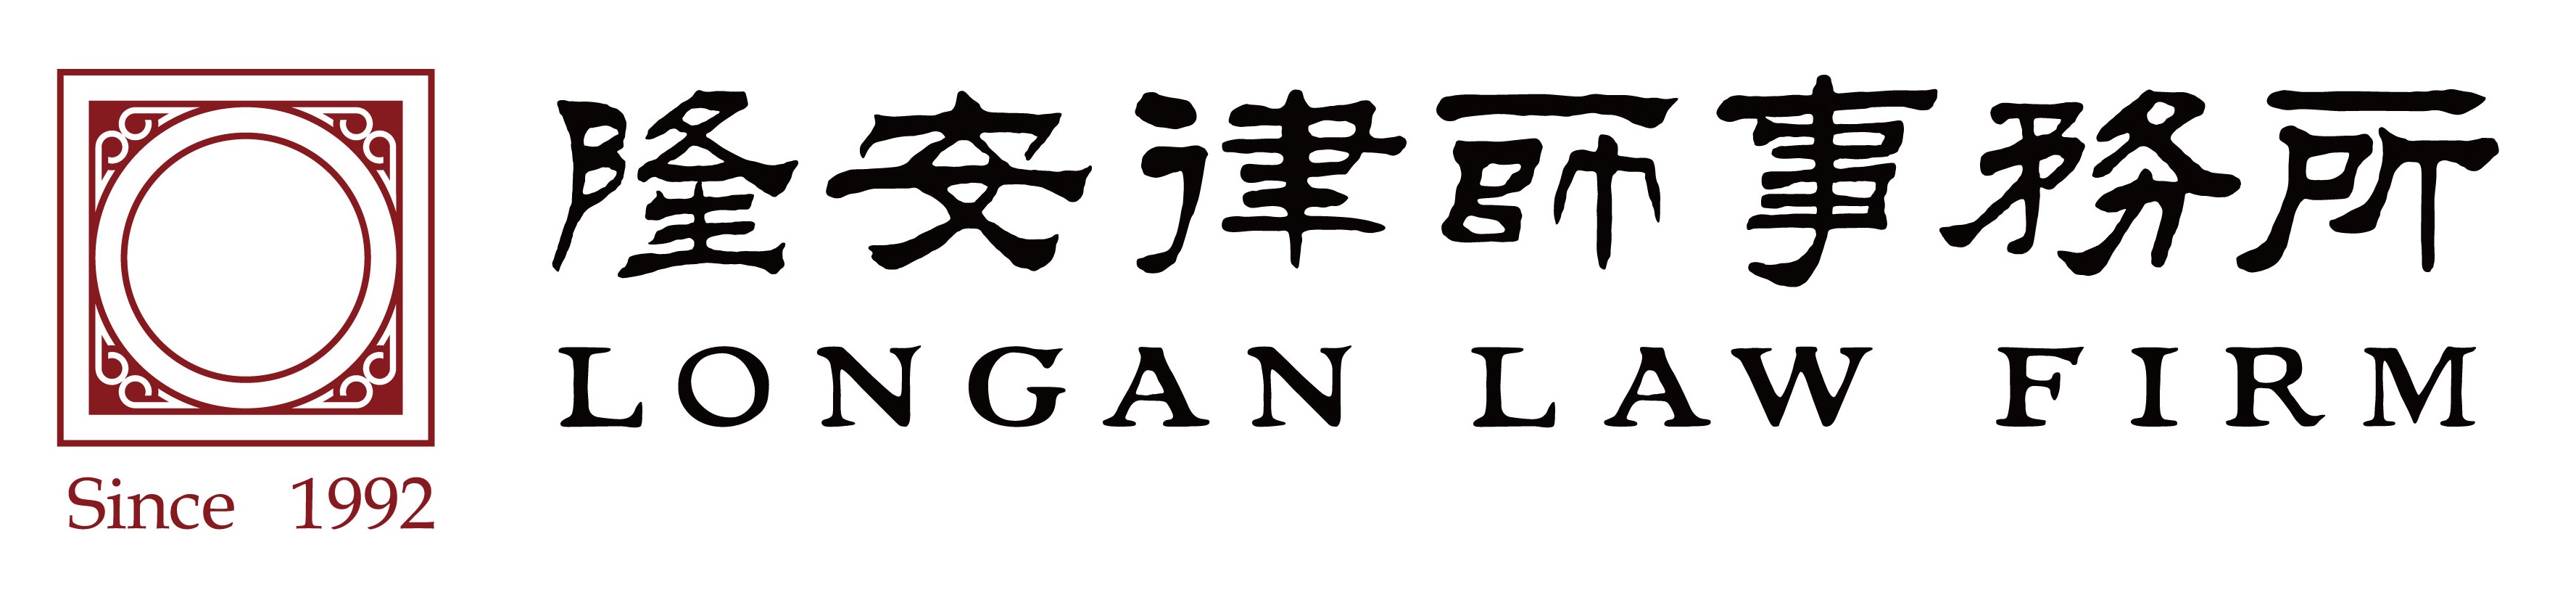 longan logo